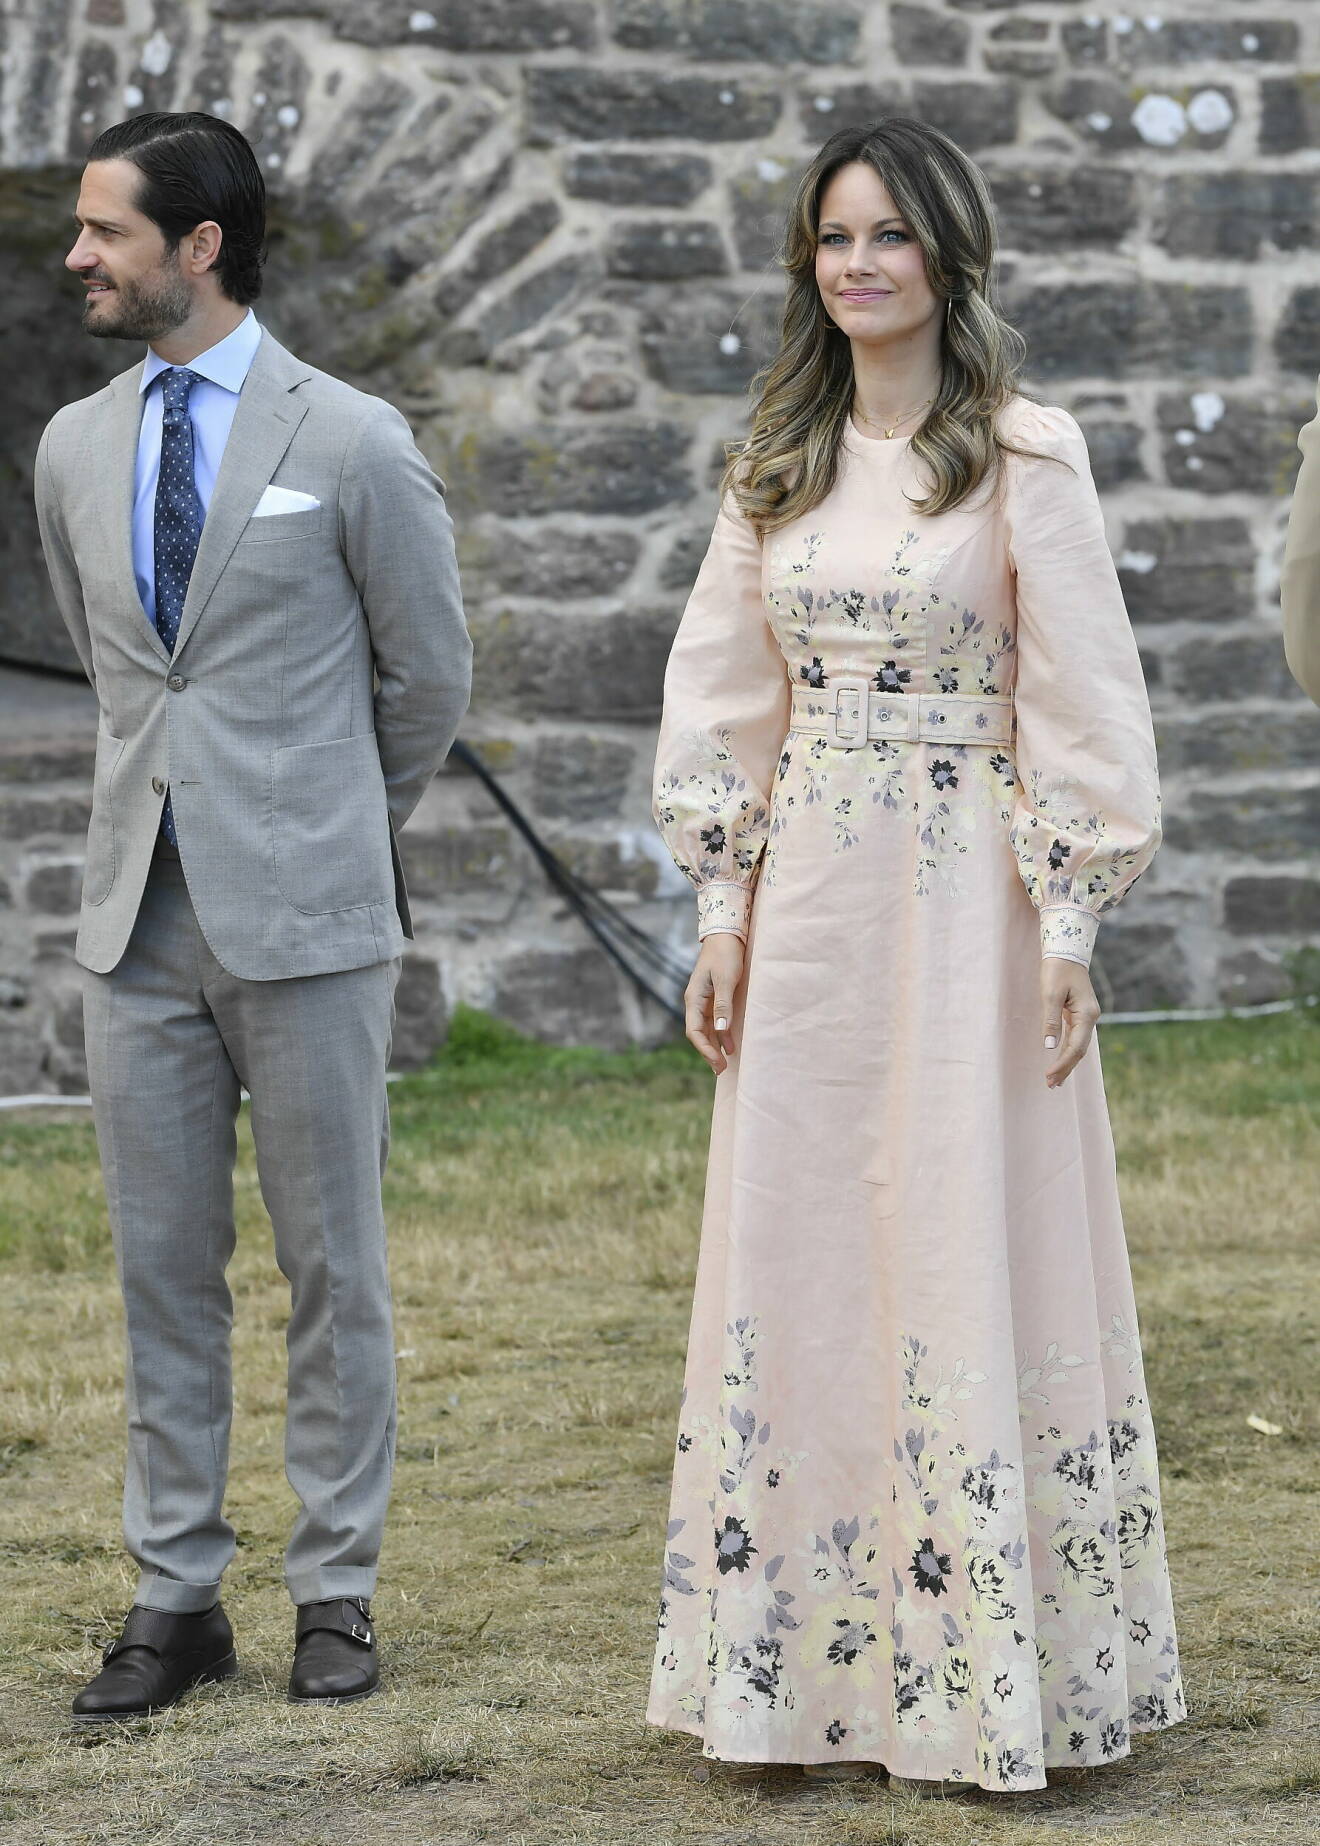 Prinsessan Sofia i en ljusrosa klänning och prins Carl Philip utanför Borgholms Slottsruin inför Victoriakonserten den 14:e juli